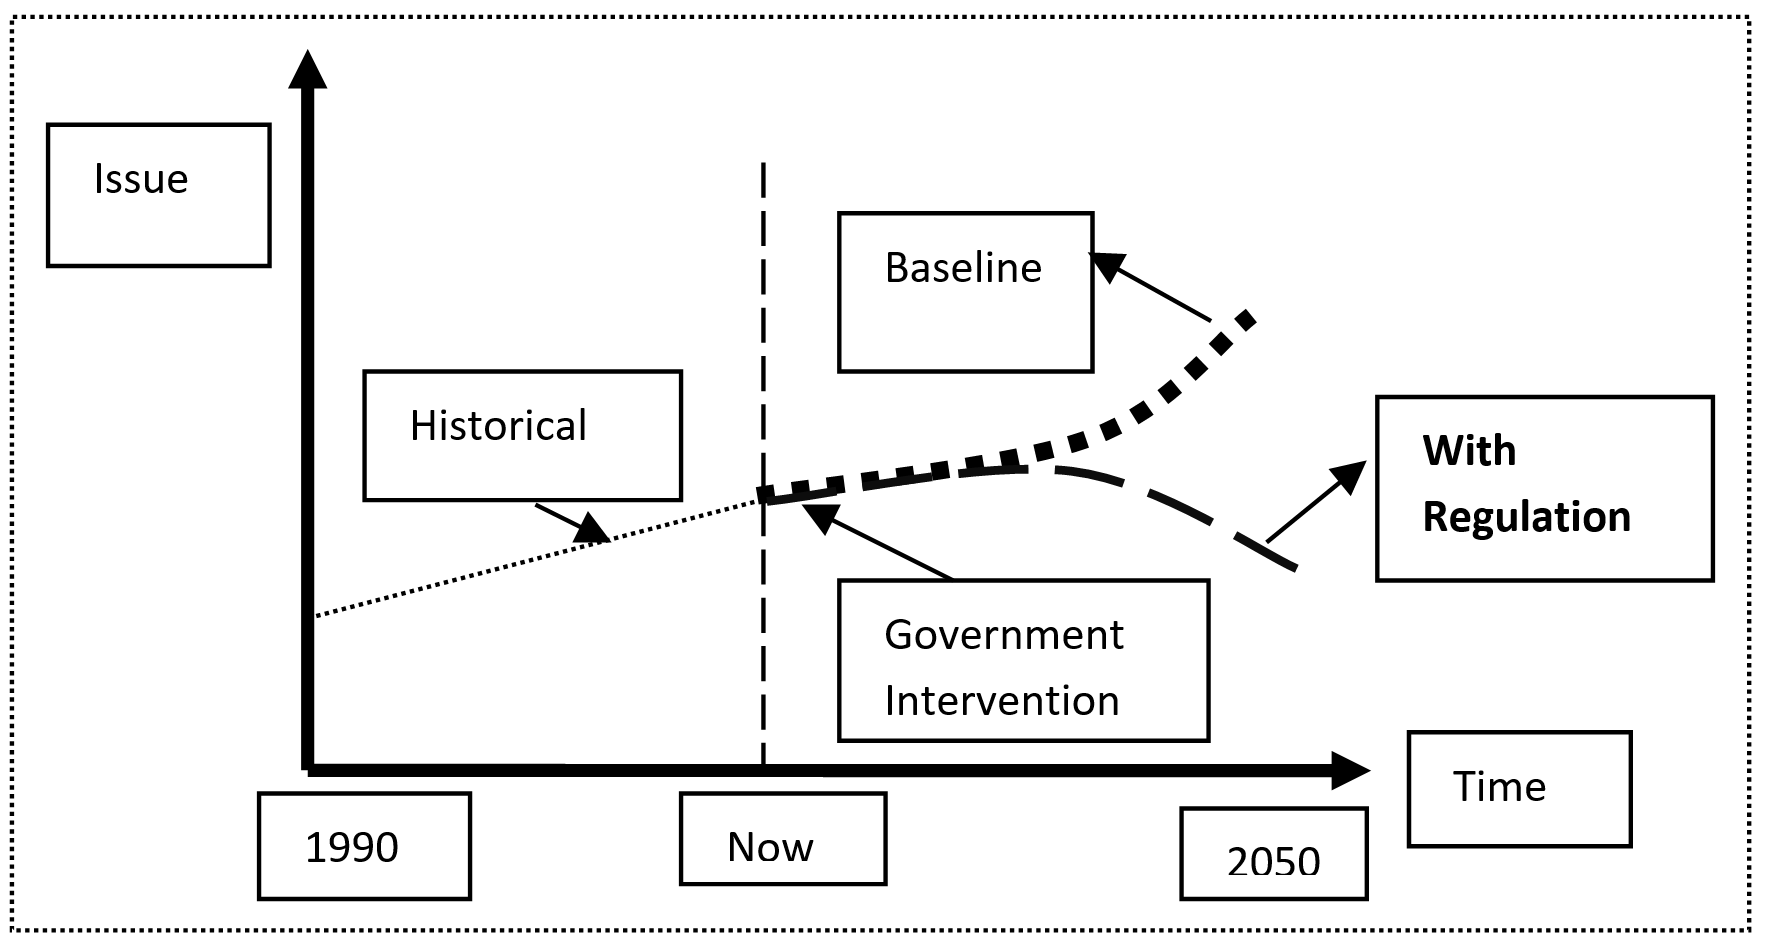 Figure 2. Comparison of a baseline scenario with a regulatory scenario Text version below: